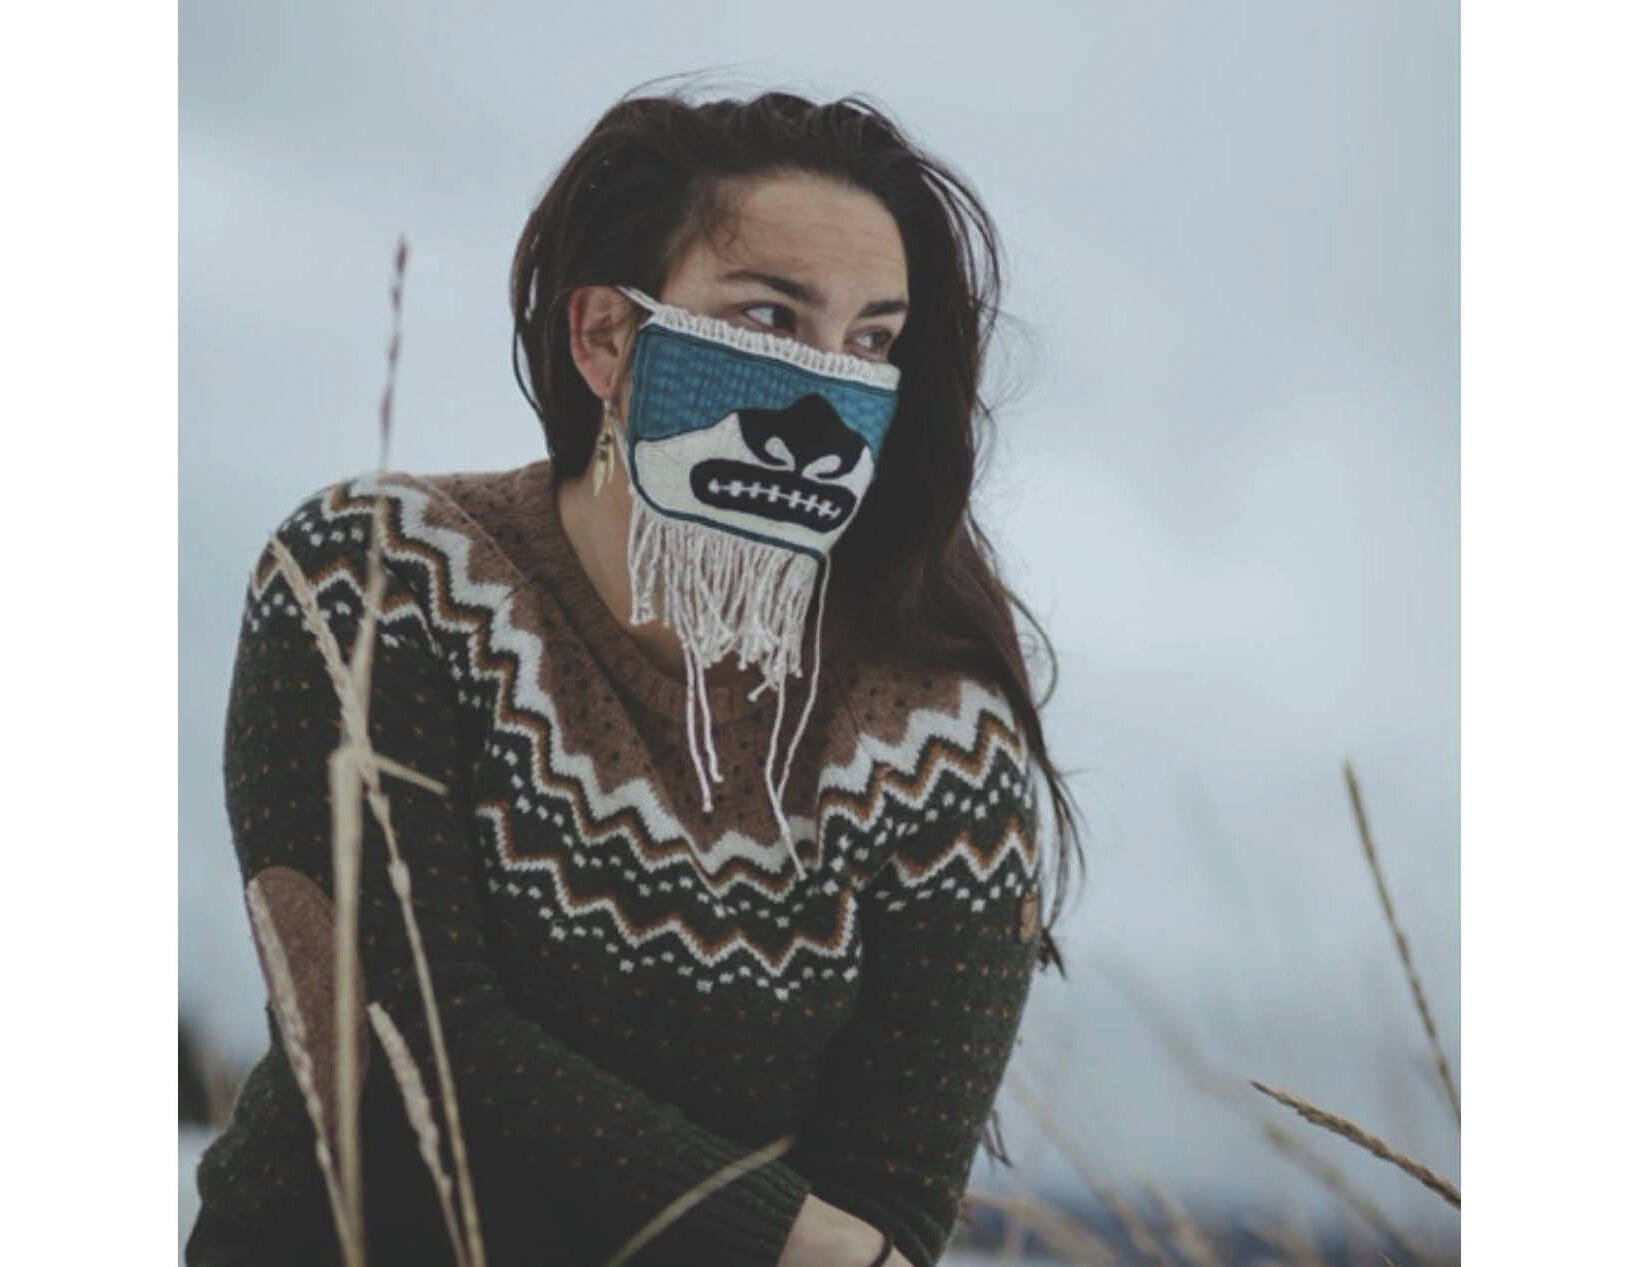 Provided by Asia Freeman, taken by Akagi
A woman wears Sydney Akagi’s art mask in the fall of 2020, in Tlingit Aani, Juneau, Alaska.